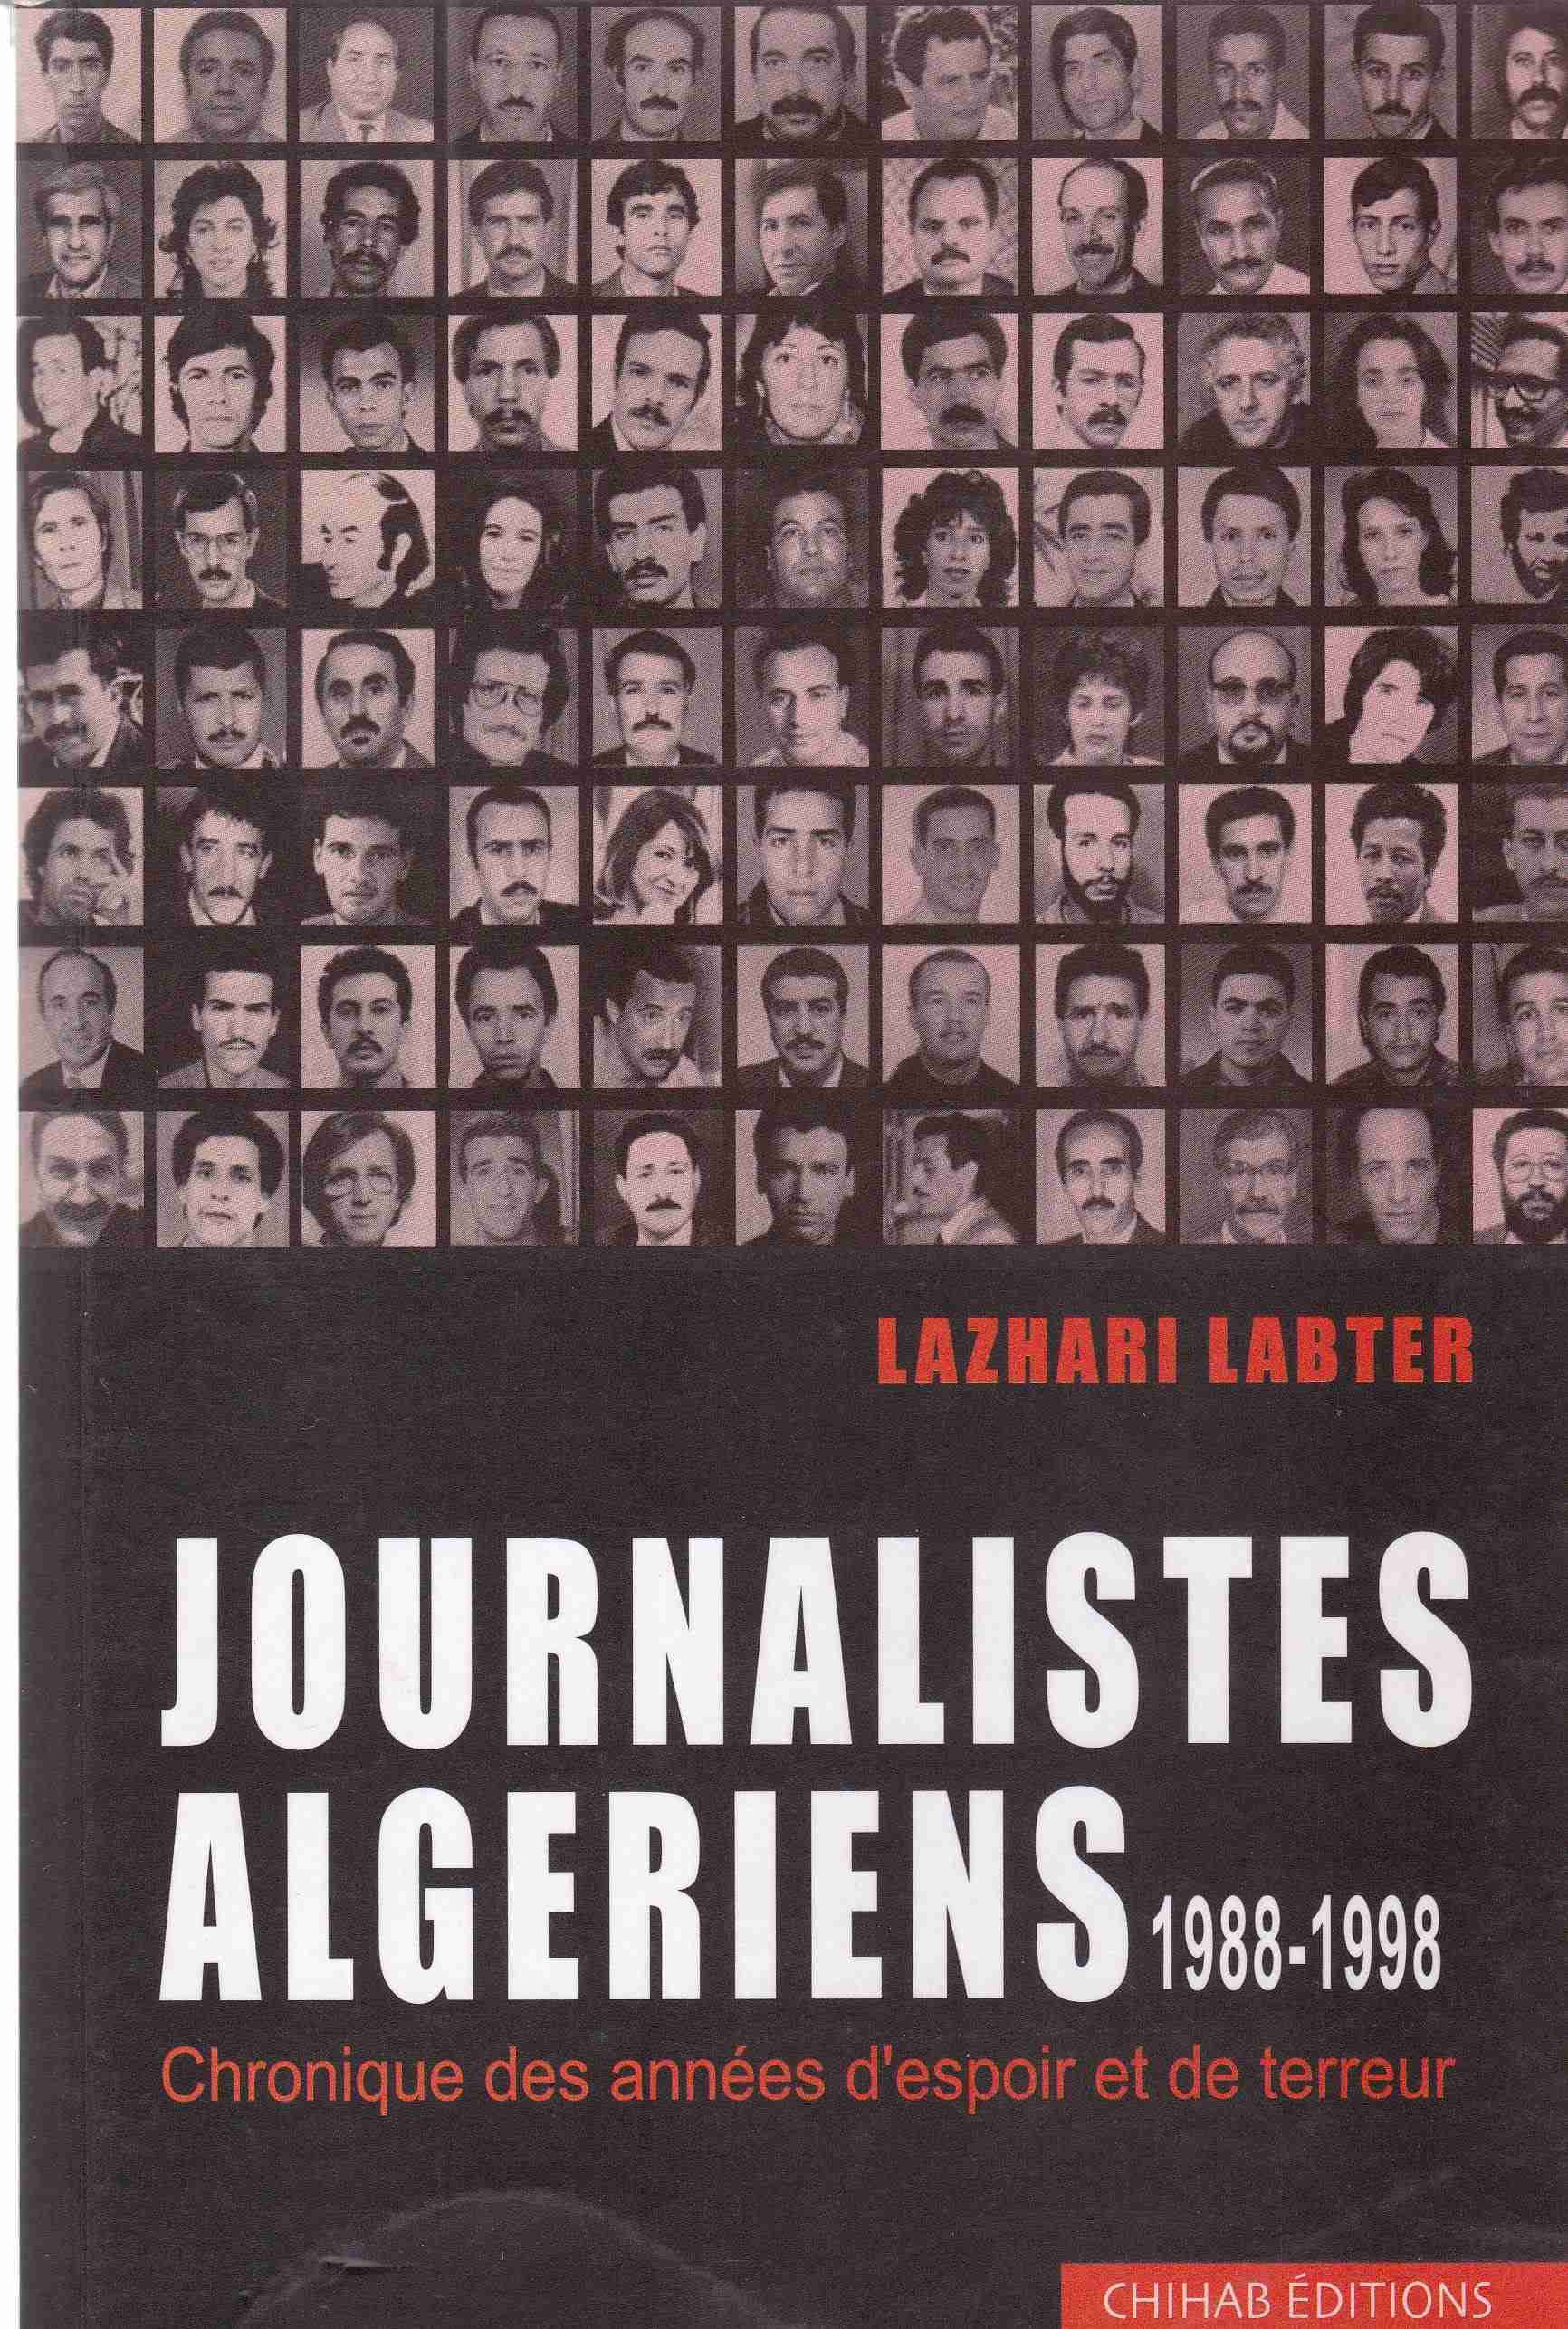 journalistes algeriens 1988-1998